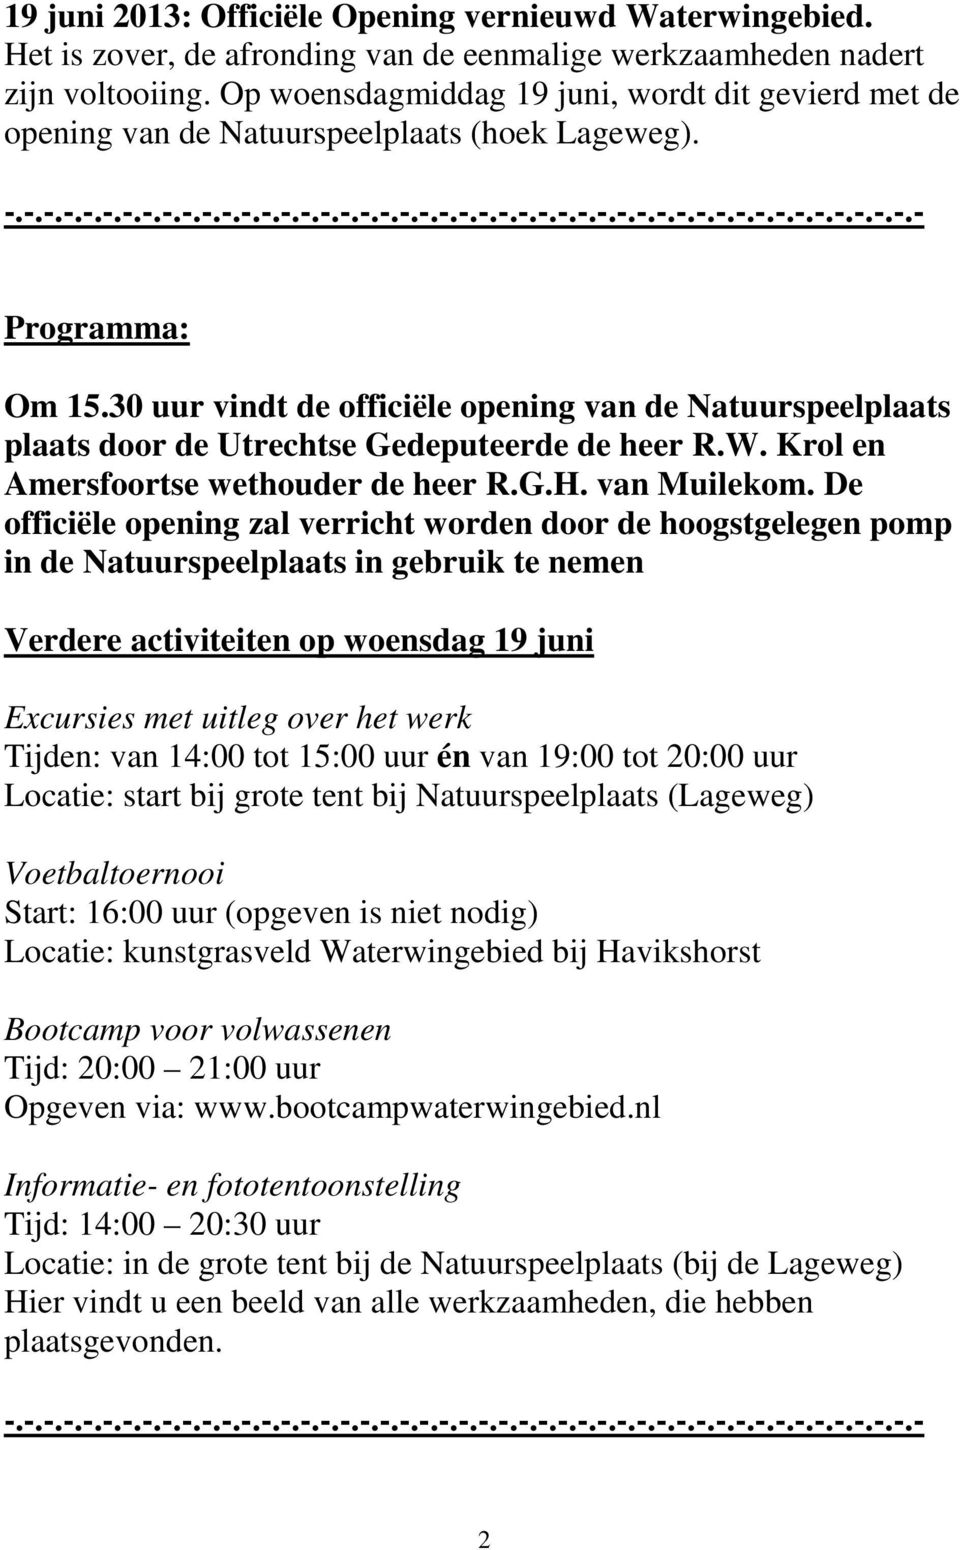 30 uur vindt de officiële opening van de Natuurspeelplaats plaats door de Utrechtse Gedeputeerde de heer R.W. Krol en Amersfoortse wethouder de heer R.G.H. van Muilekom.